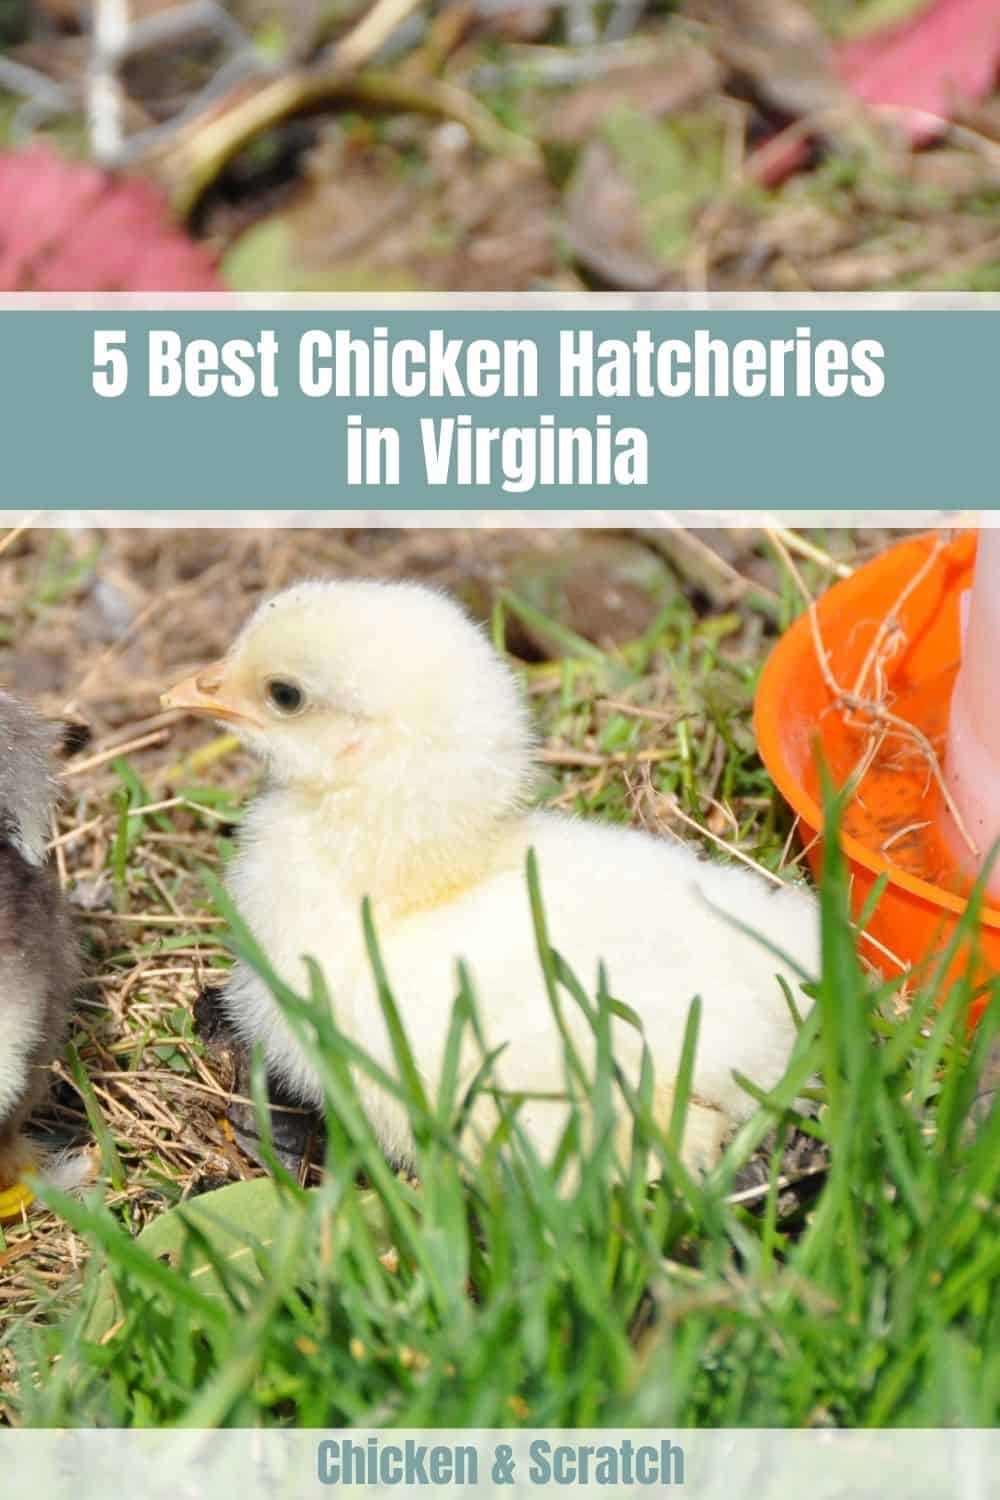 Best Chicken Hatcheries in Virginia